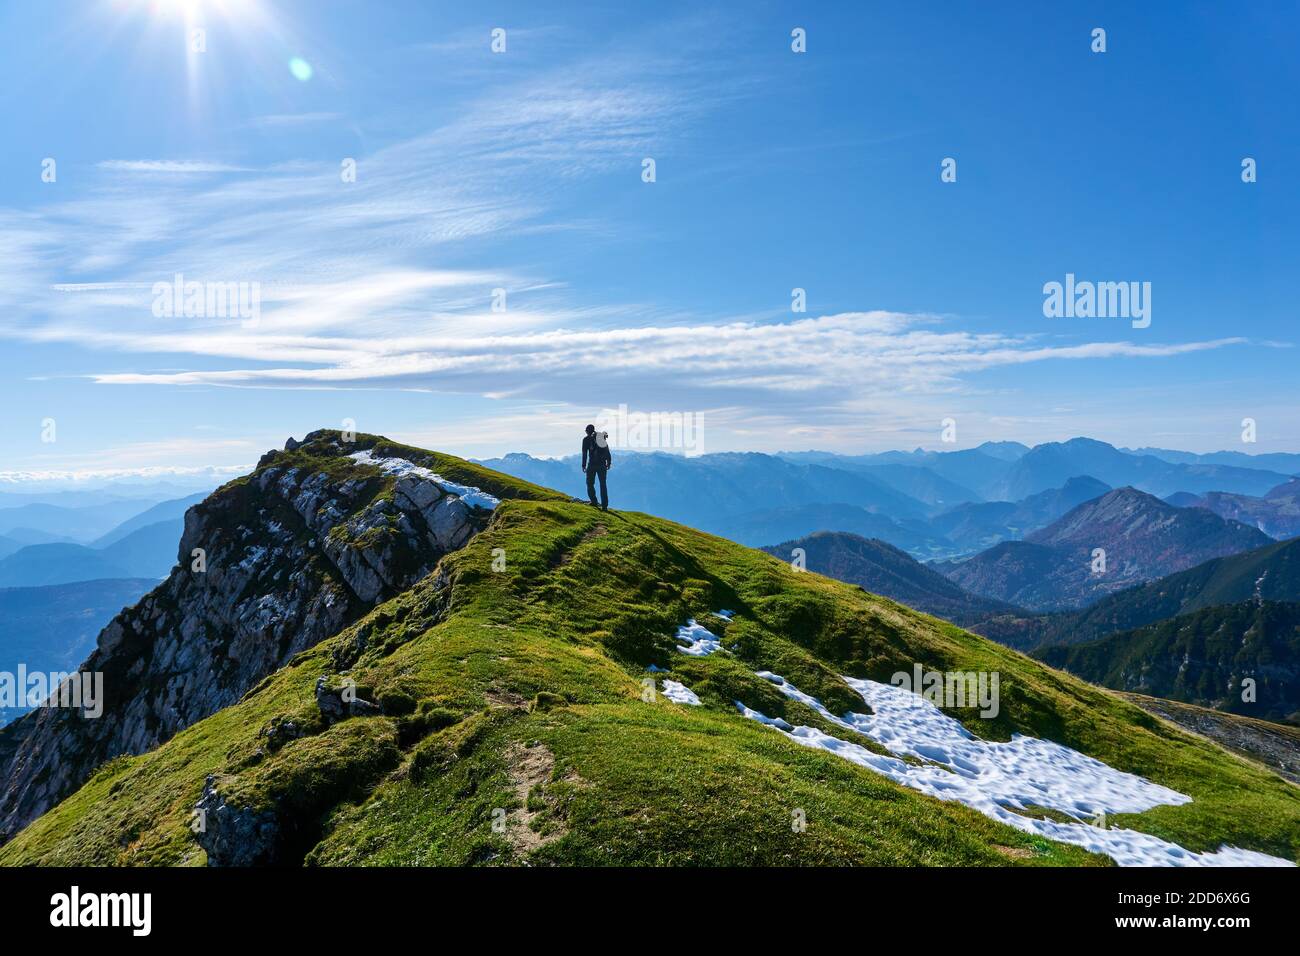 Silhouette d'un homme debout au-dessus du mont gamsfeld en autriche Banque D'Images